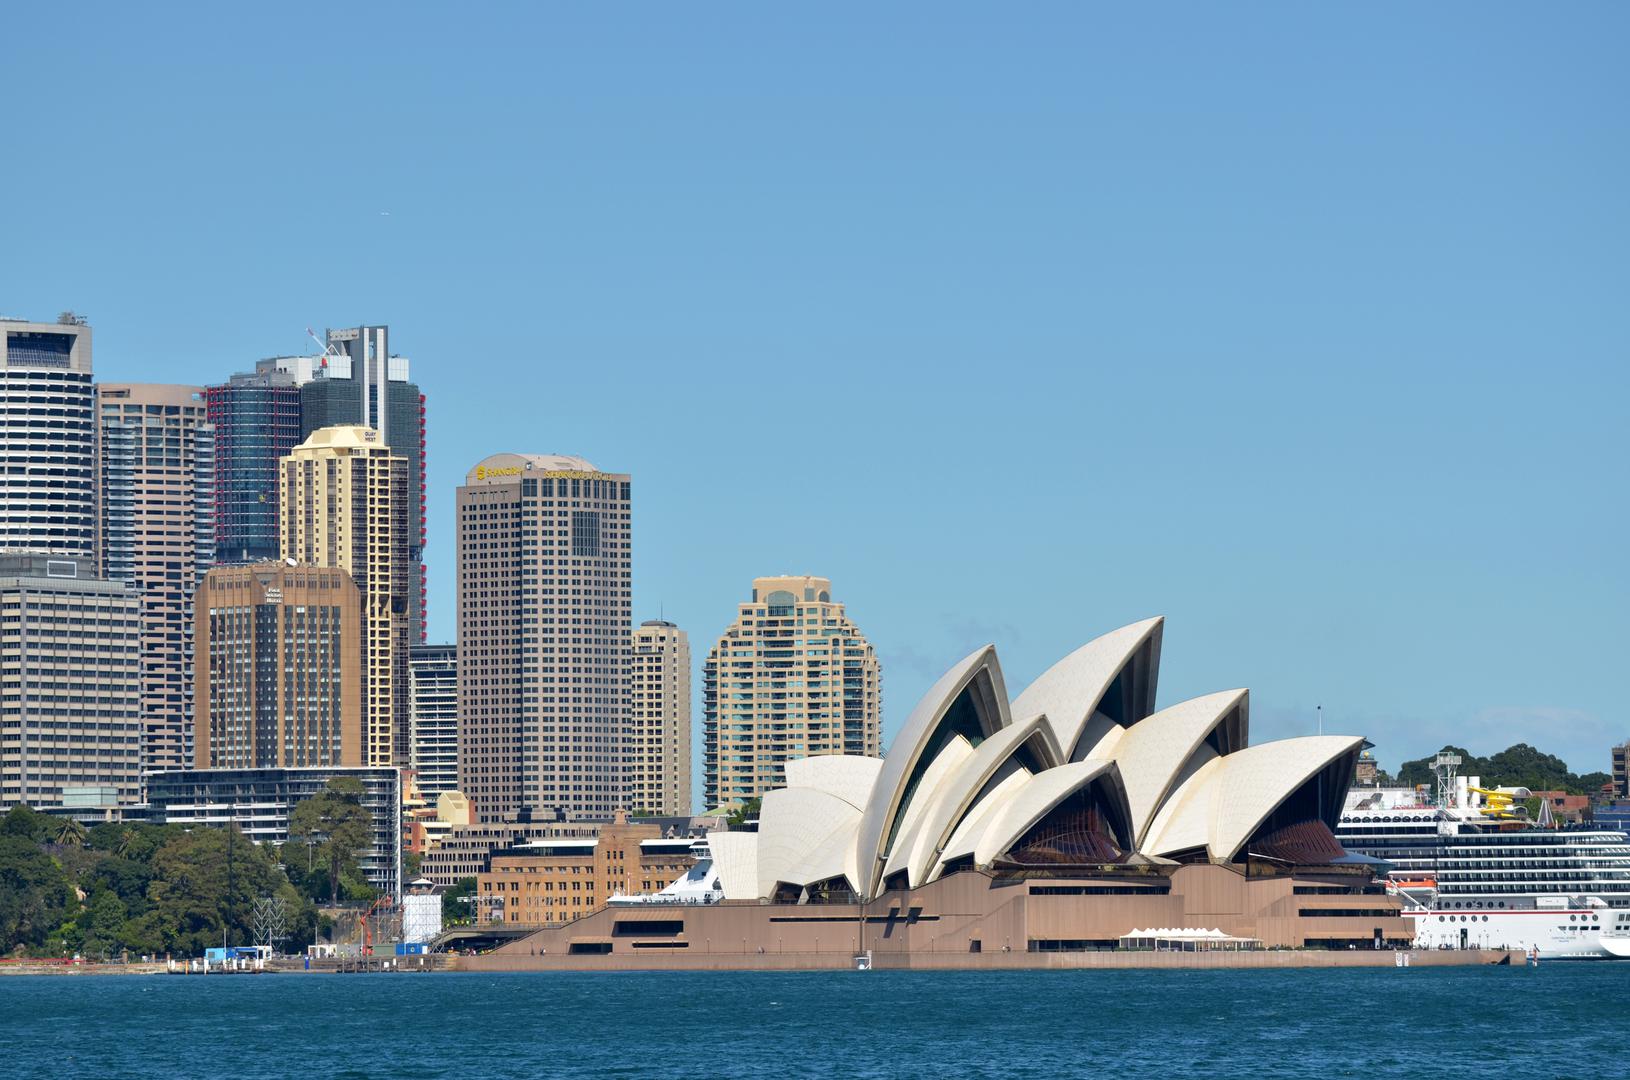 6. Australija: Australiji je upravo izmaklo mjesto među prvih pet, ali je i dalje jedna od najljubaznijih zemalja na svijetu za turiste. Plaže su naravno jedna od njenih glavnih atrakcija, ali nemojte propustite ni zabavan gradski život u Melbourneu i Sydneyu.